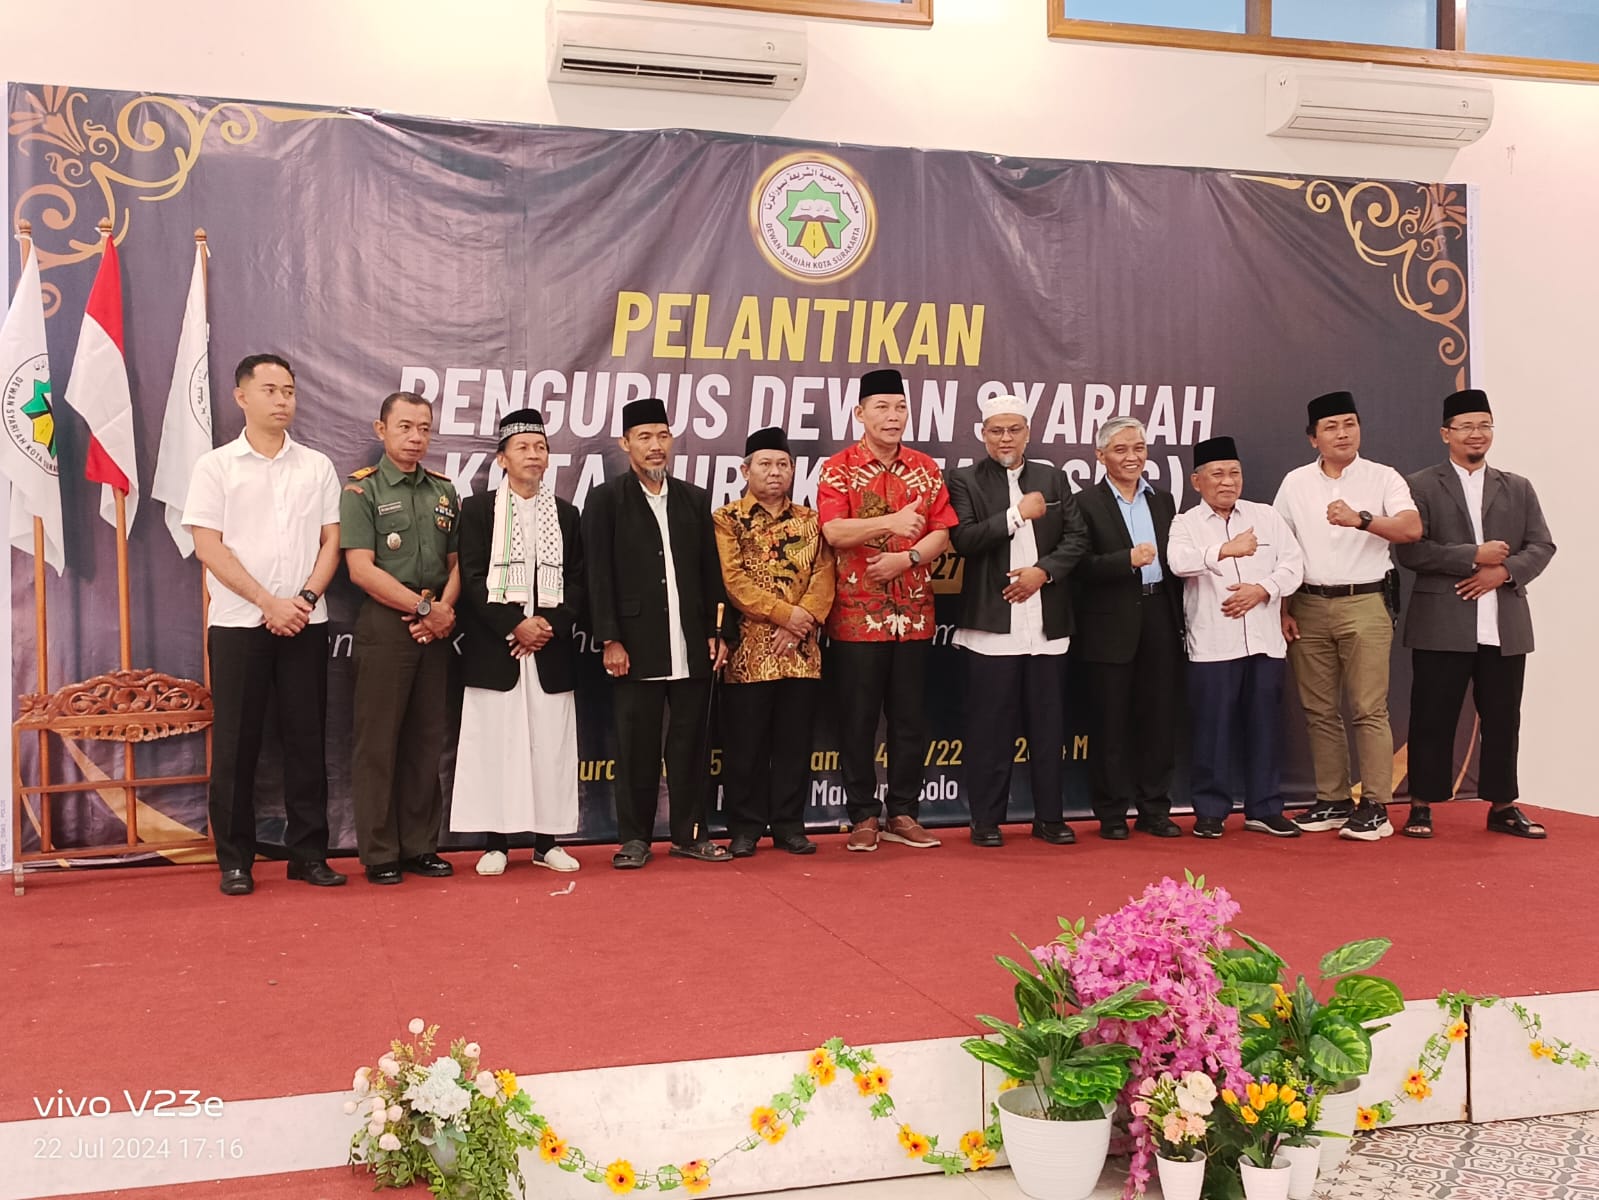 Pengurus Dewan Syariah Kota Surakarta Periode 2024-2027 Resmi Dilantik